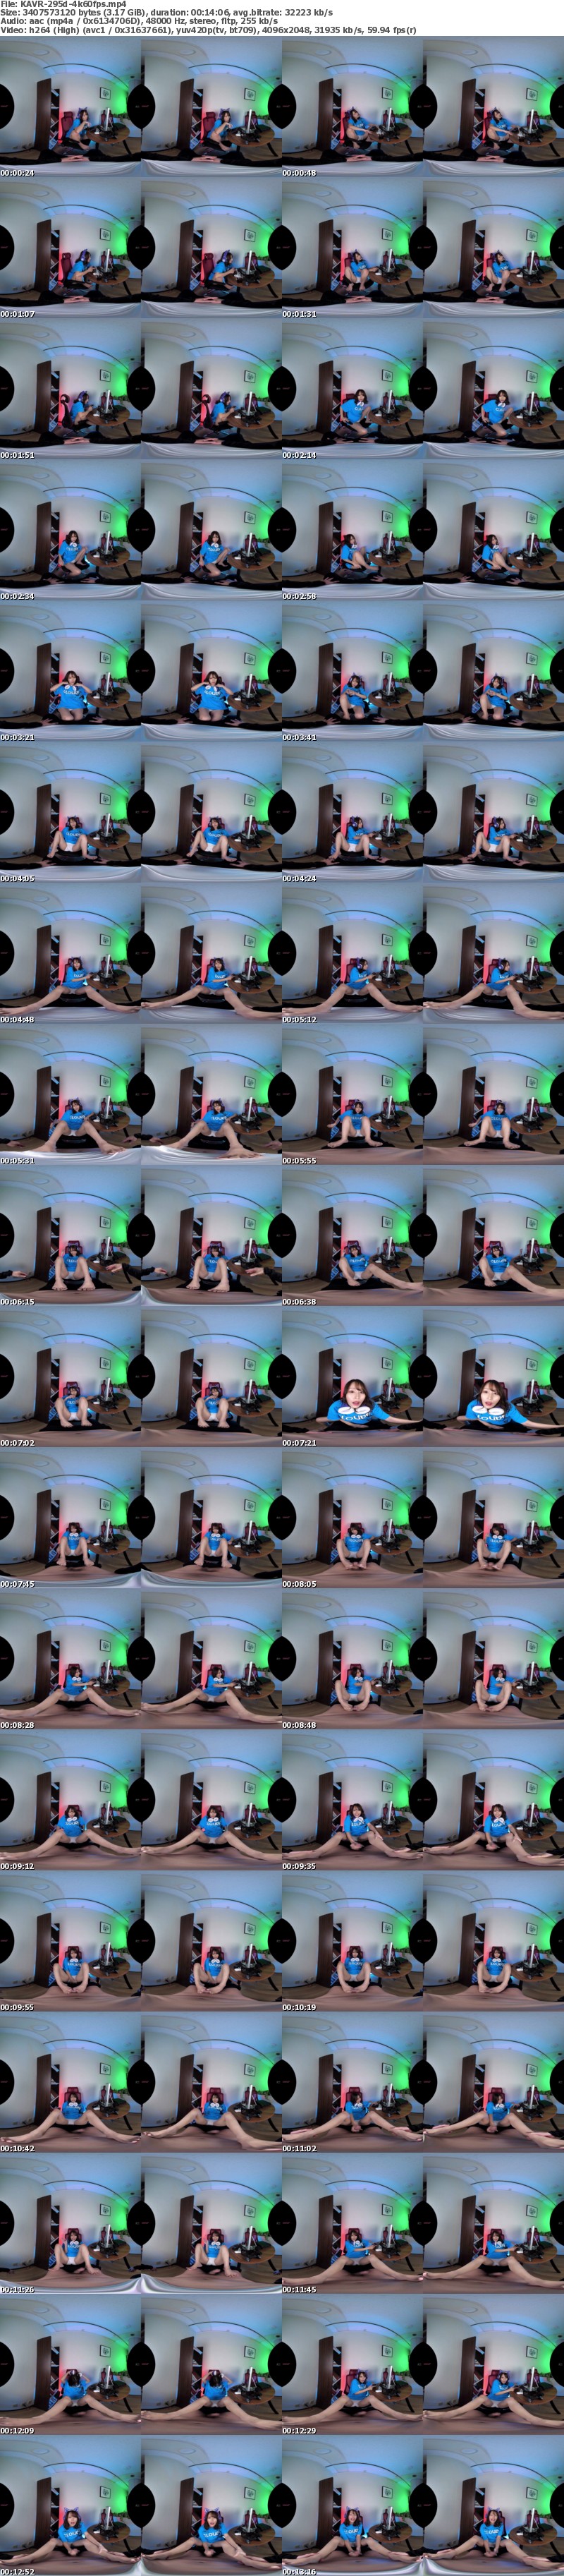 [VR] KAVR-295 【VR】もしも、伊藤舞雪とバイト先が一緒だったら…この笑顔、このおっぱい…もしかして誘ってる！？ラッキースケベ×5シチュエーション150分